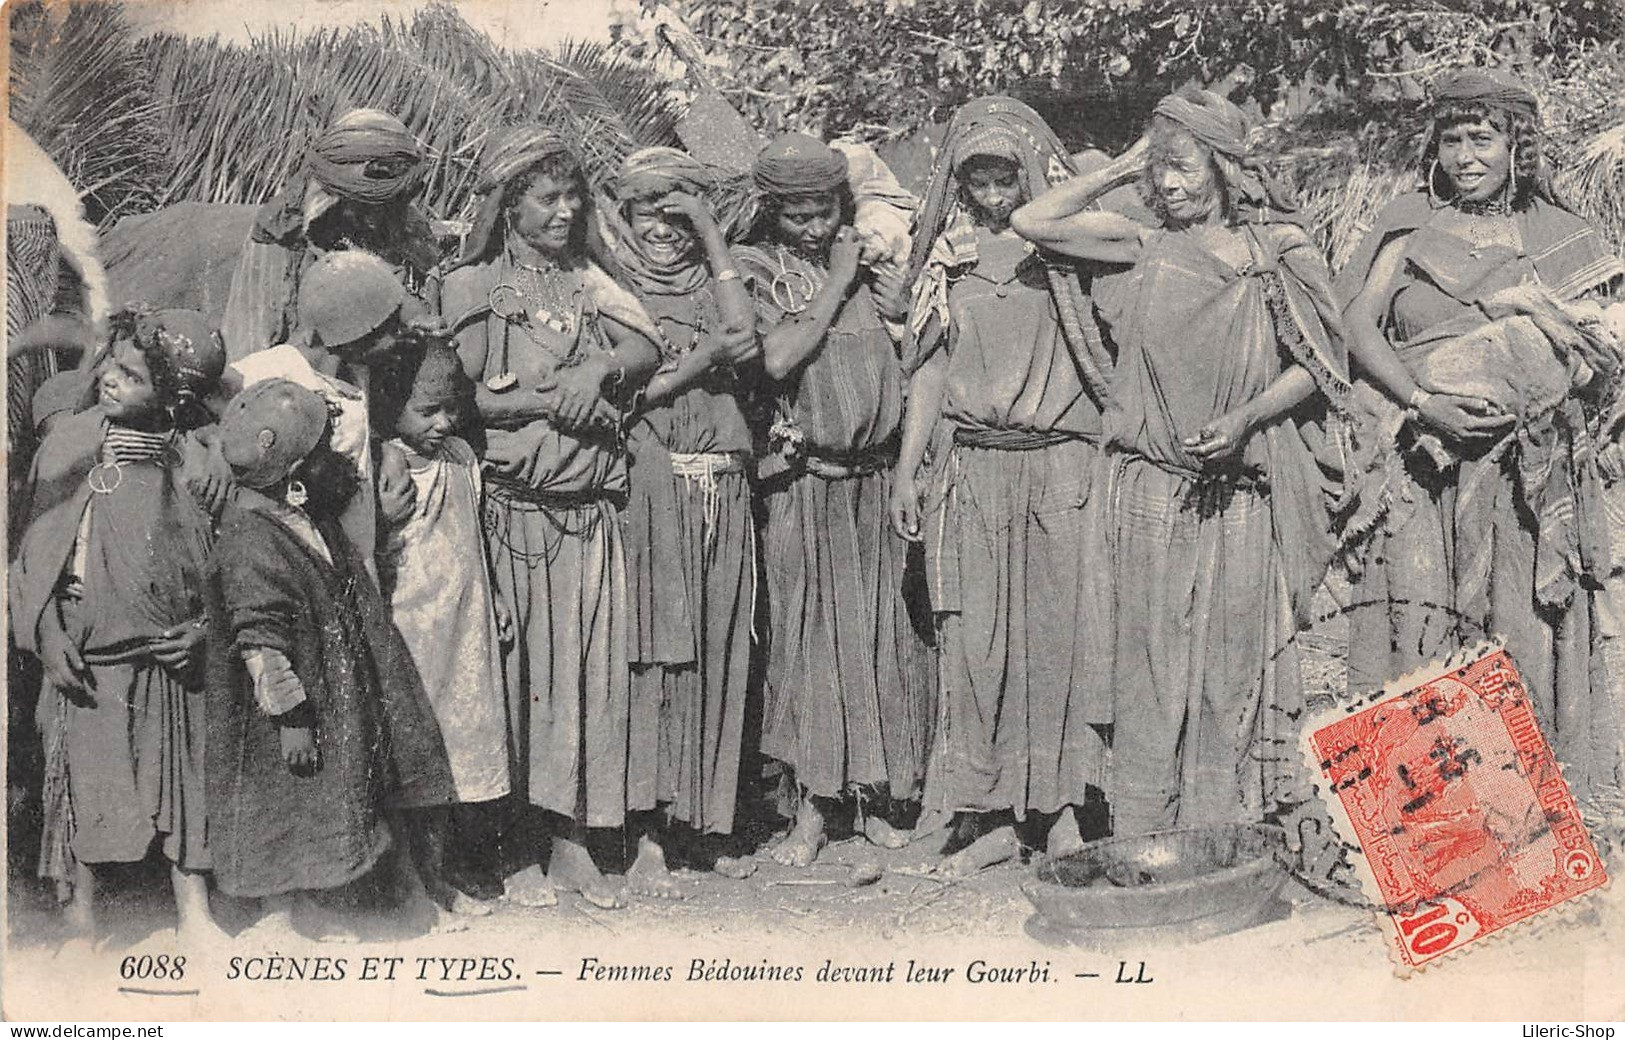 TUNISIE / SCÈNES ET TYPES CPA ± 1910 ▬ FEMMES BÉDOUINES DEVANT LEUR GOURBI ▬ ÉDIT. LL N°6088 - Tunisie